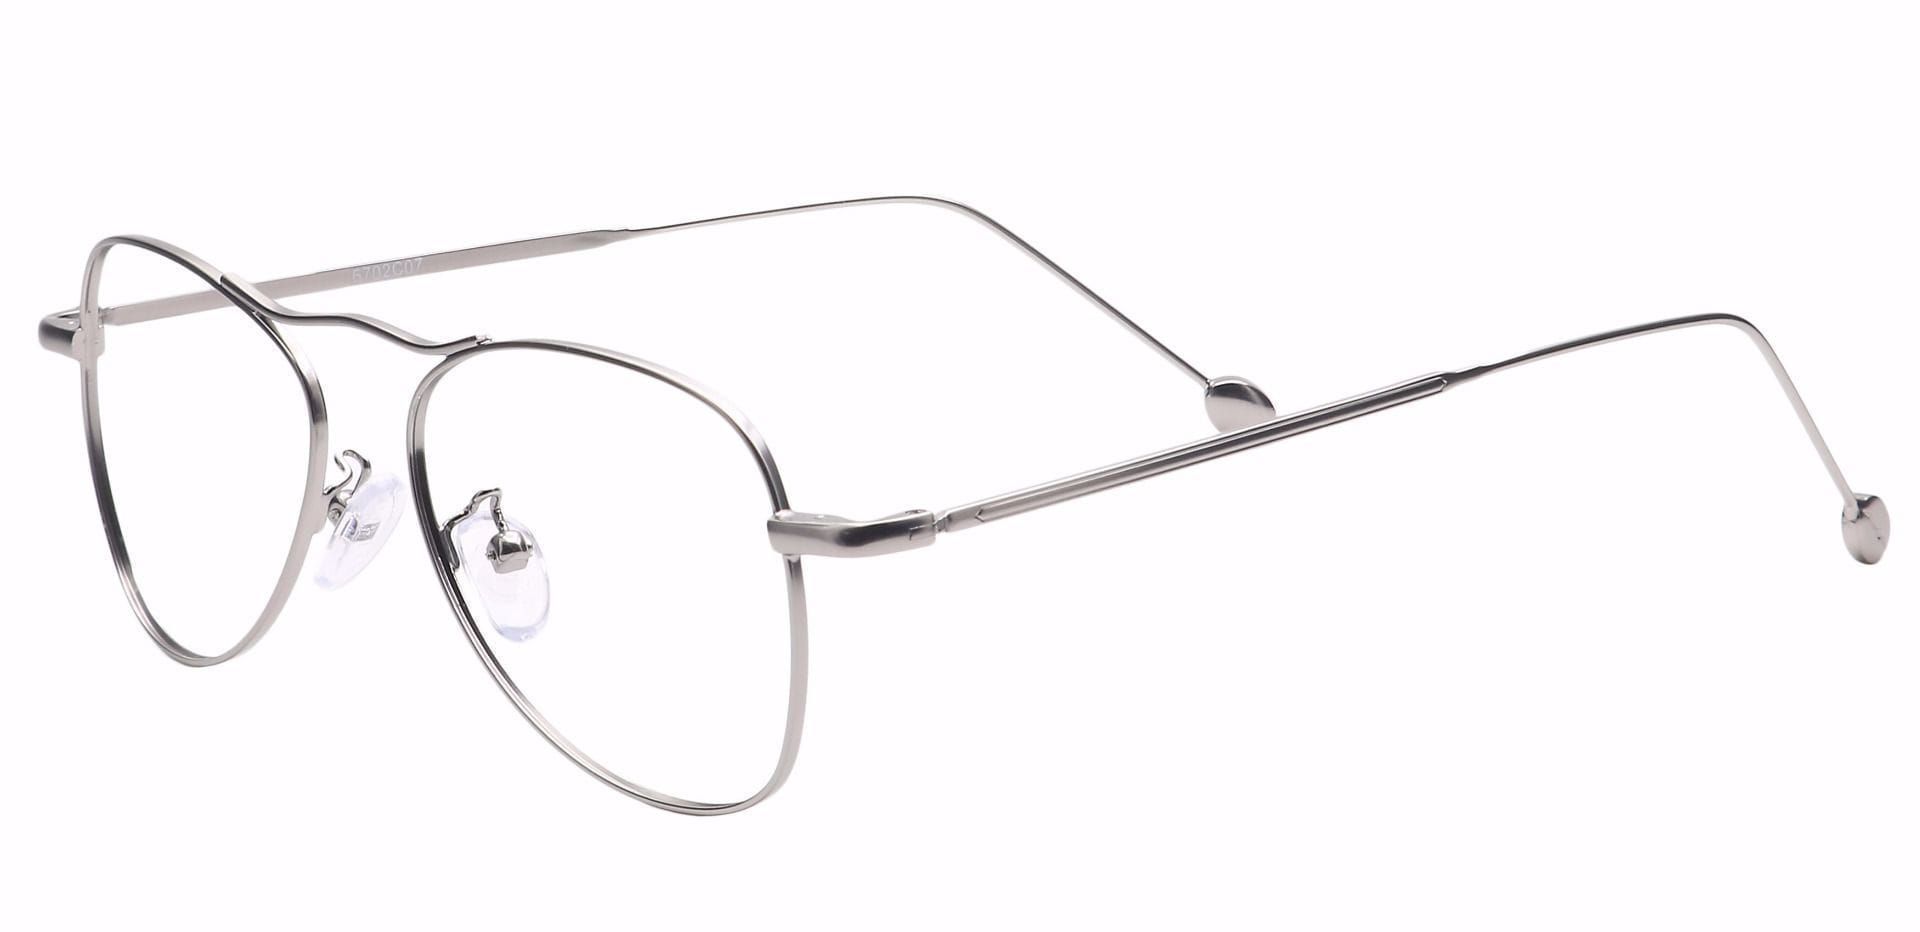 Brio Aviator Progressive Glasses - Silver